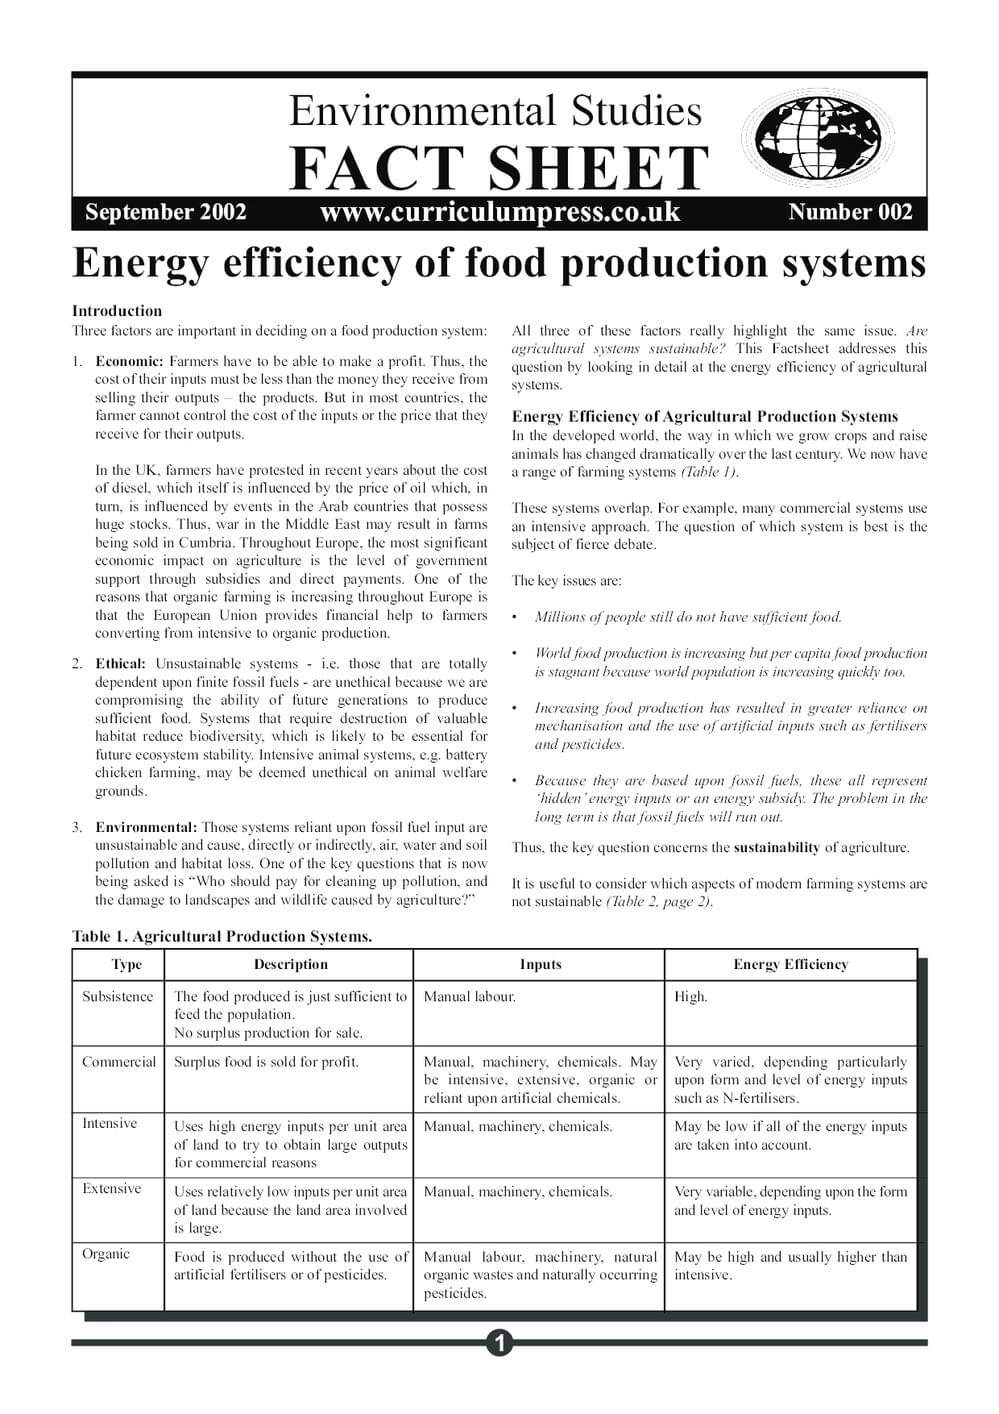 02 Energy Eff Food Prod